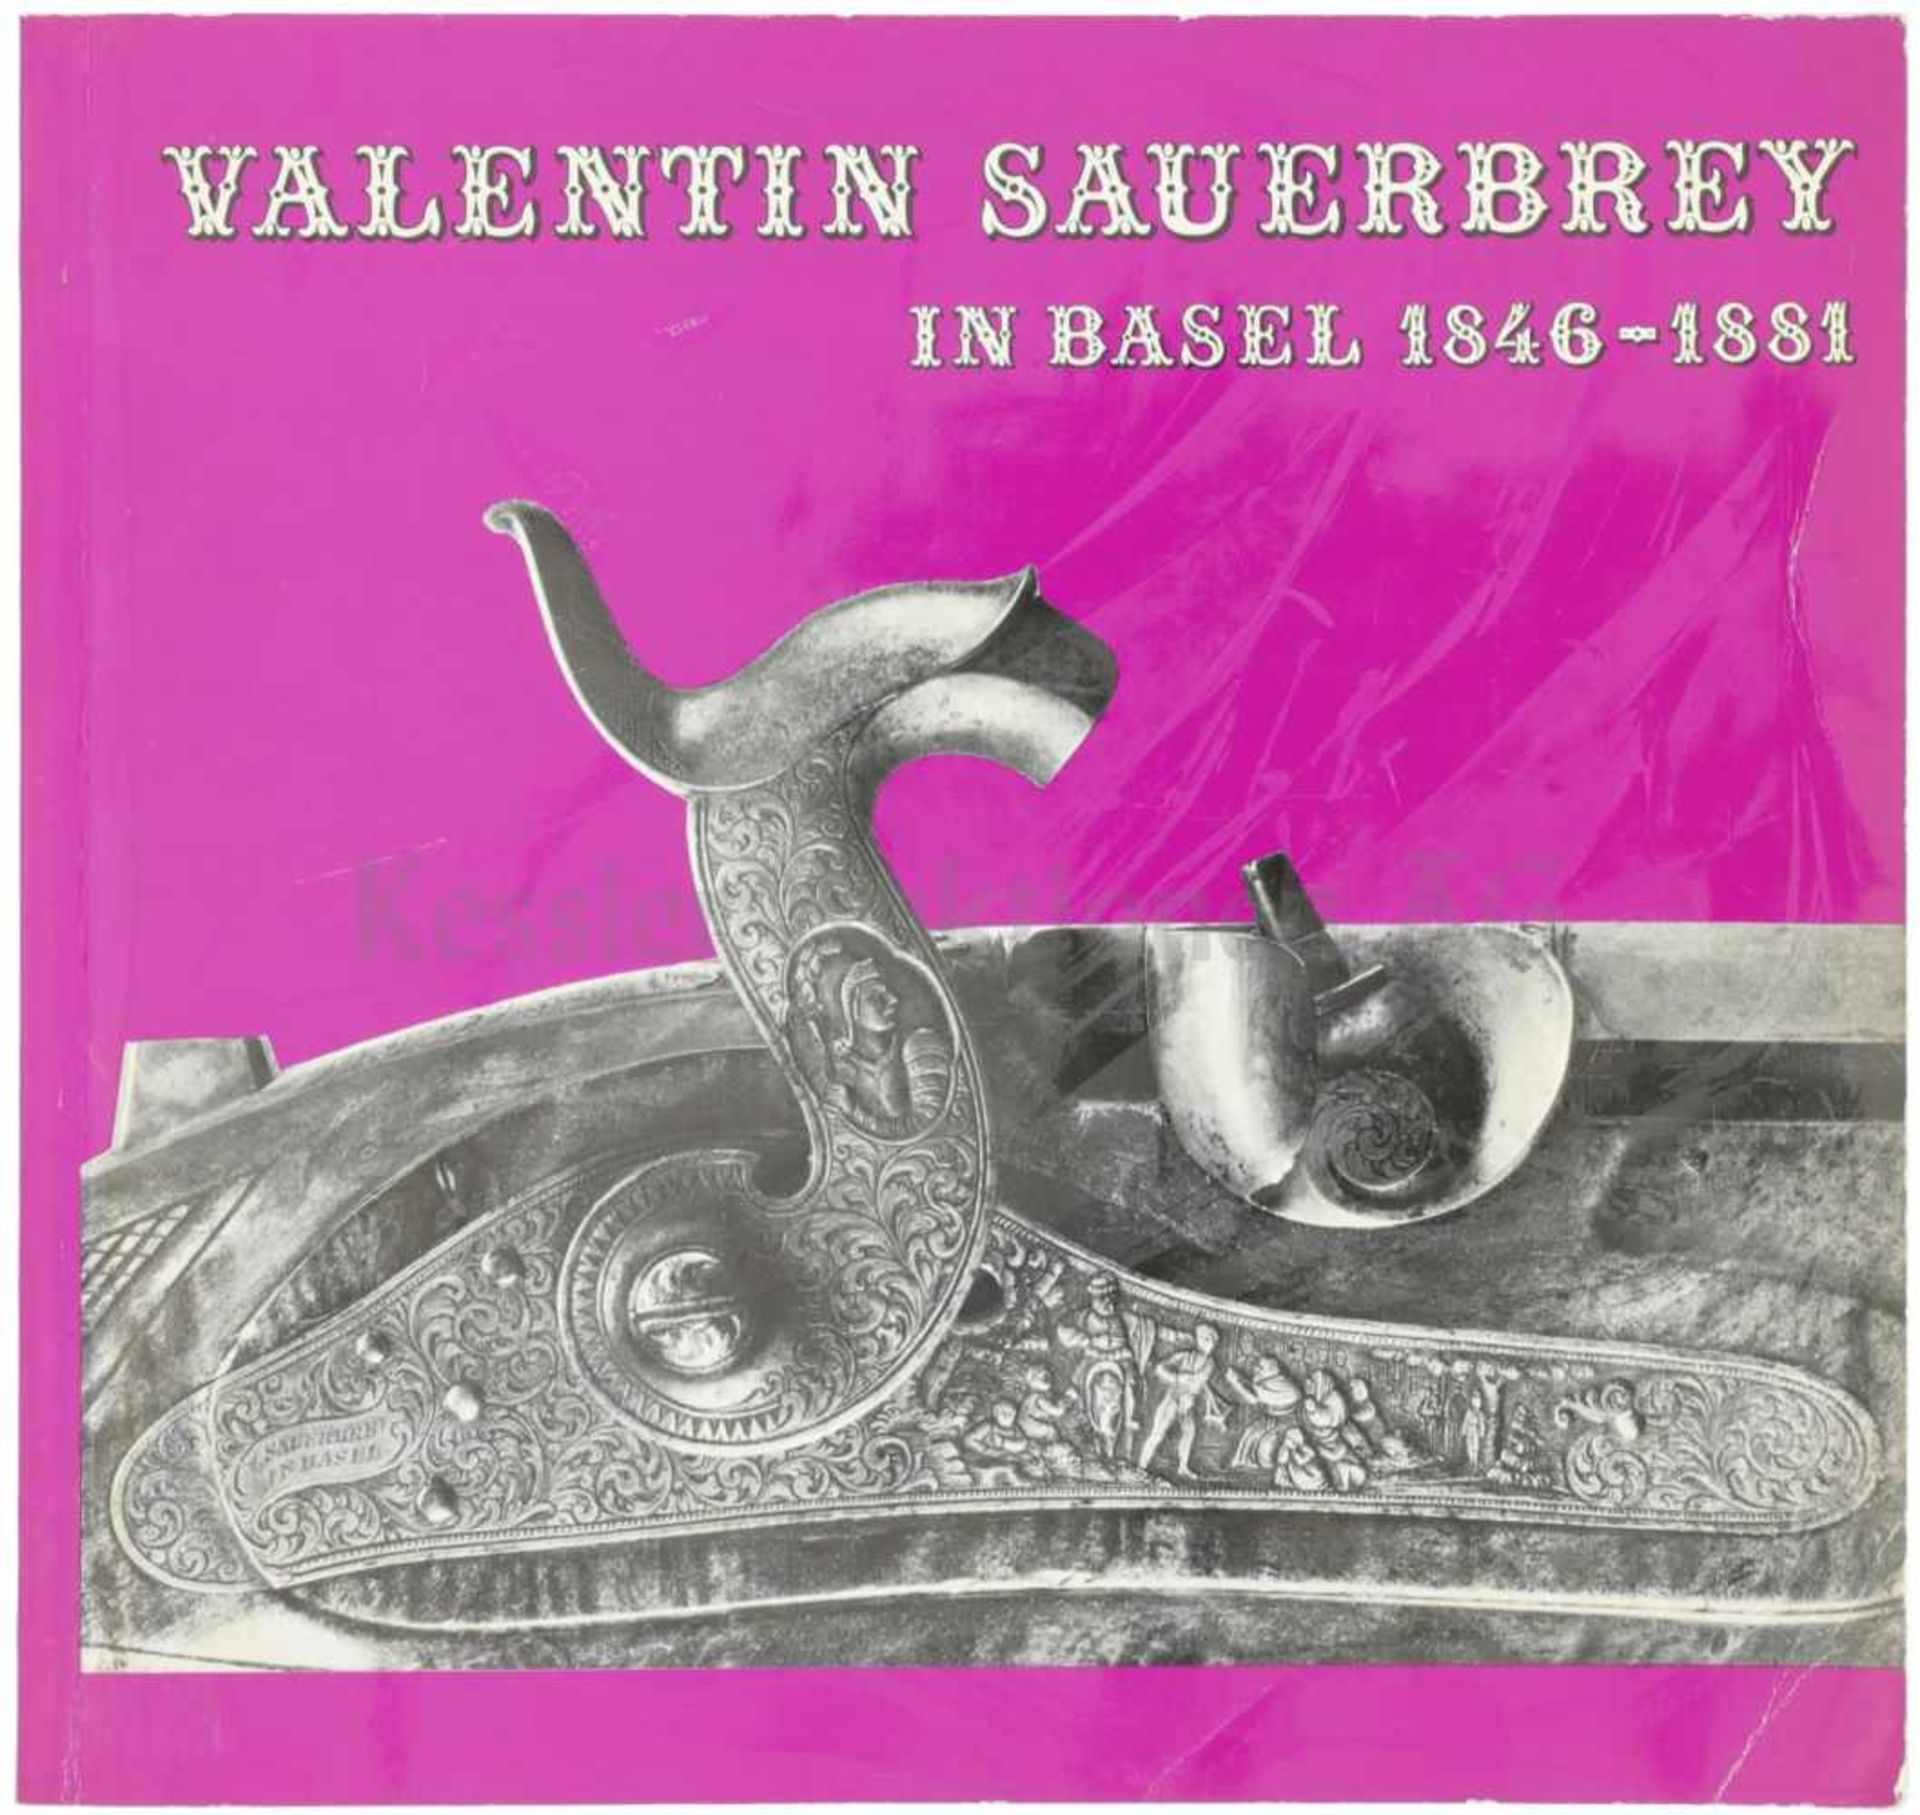 Valentin Sauerbrey in Basel, 1846-1881 Interessantes Büchlein über den innovativen Büchsenmacher